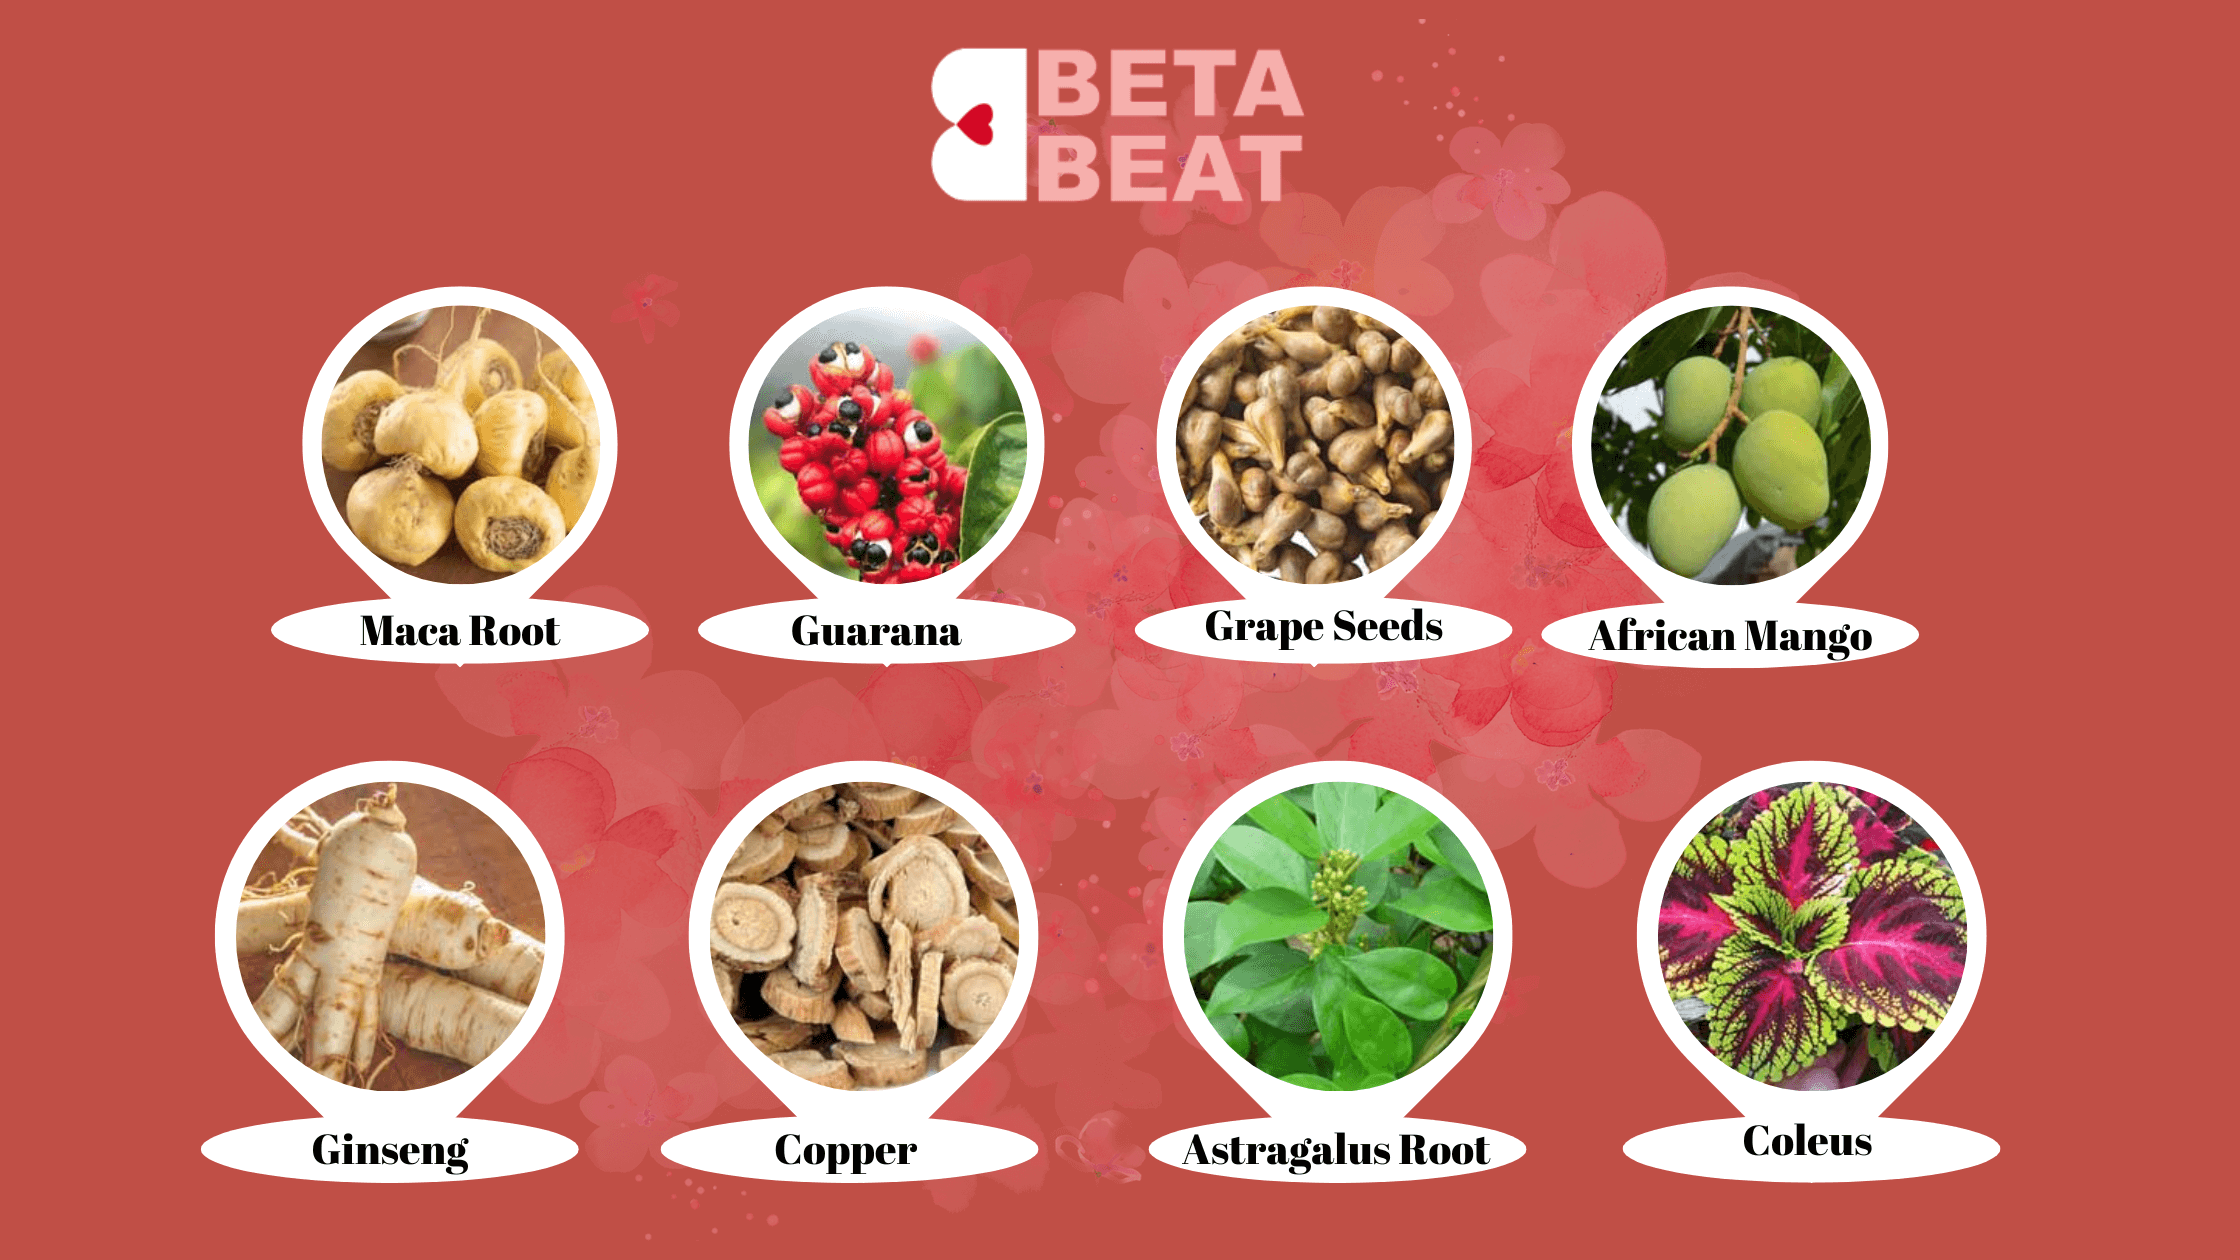 Beta Beat Ingredients